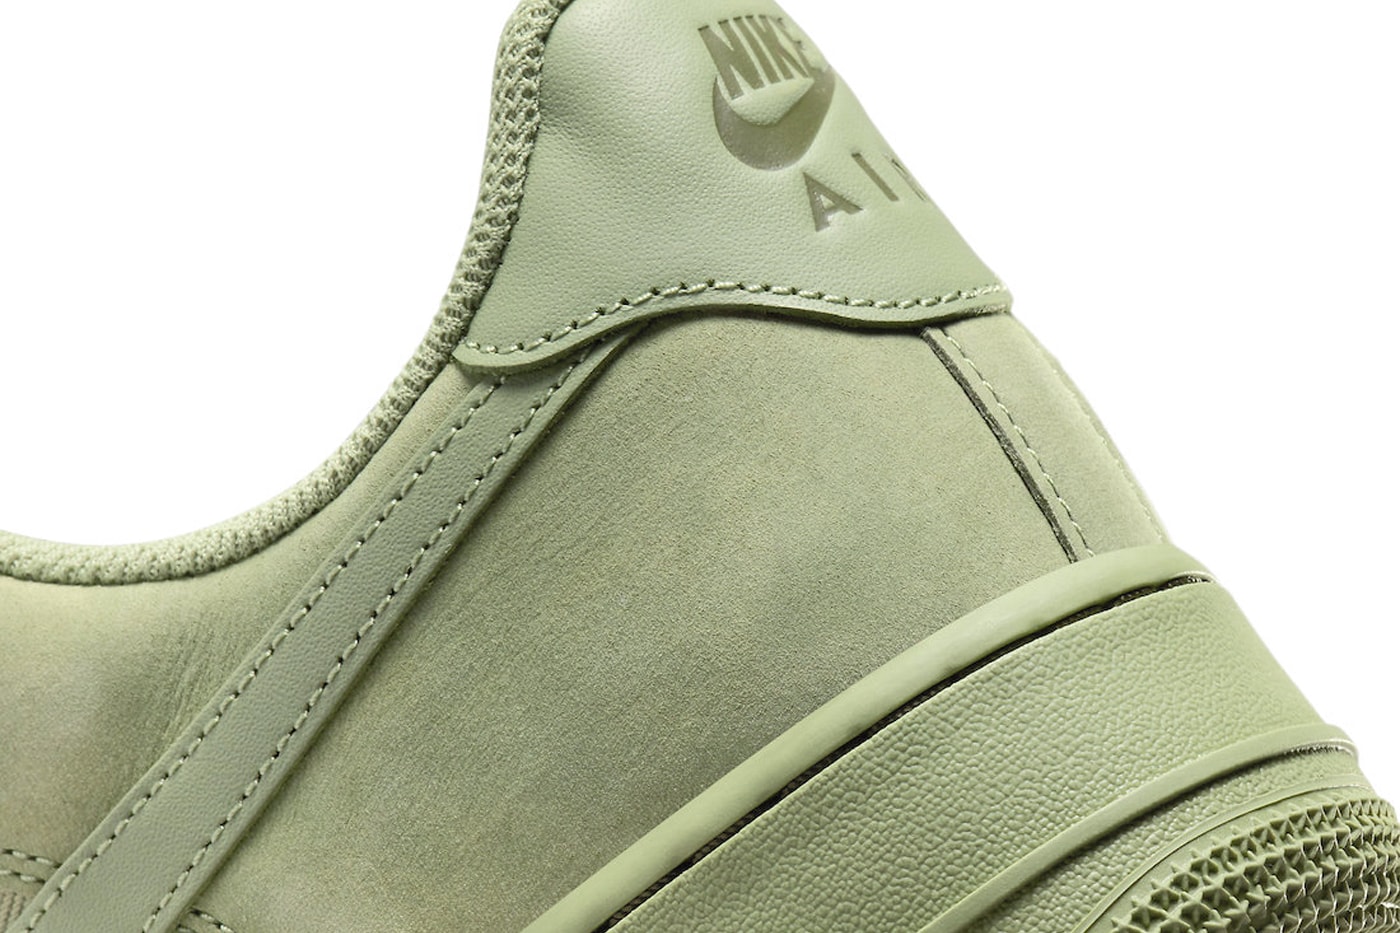 ナイキ エアフォース 1 ロー プレミアムからレトロな雰囲気の新作 オイルグリーンが登場 Official Look at the Nike Air Force One Low Premium "Oil Green"  FB8876-300 Oil Green/Oil Green-Cargo Khaki Release info af1 everyday sneakers suede twill